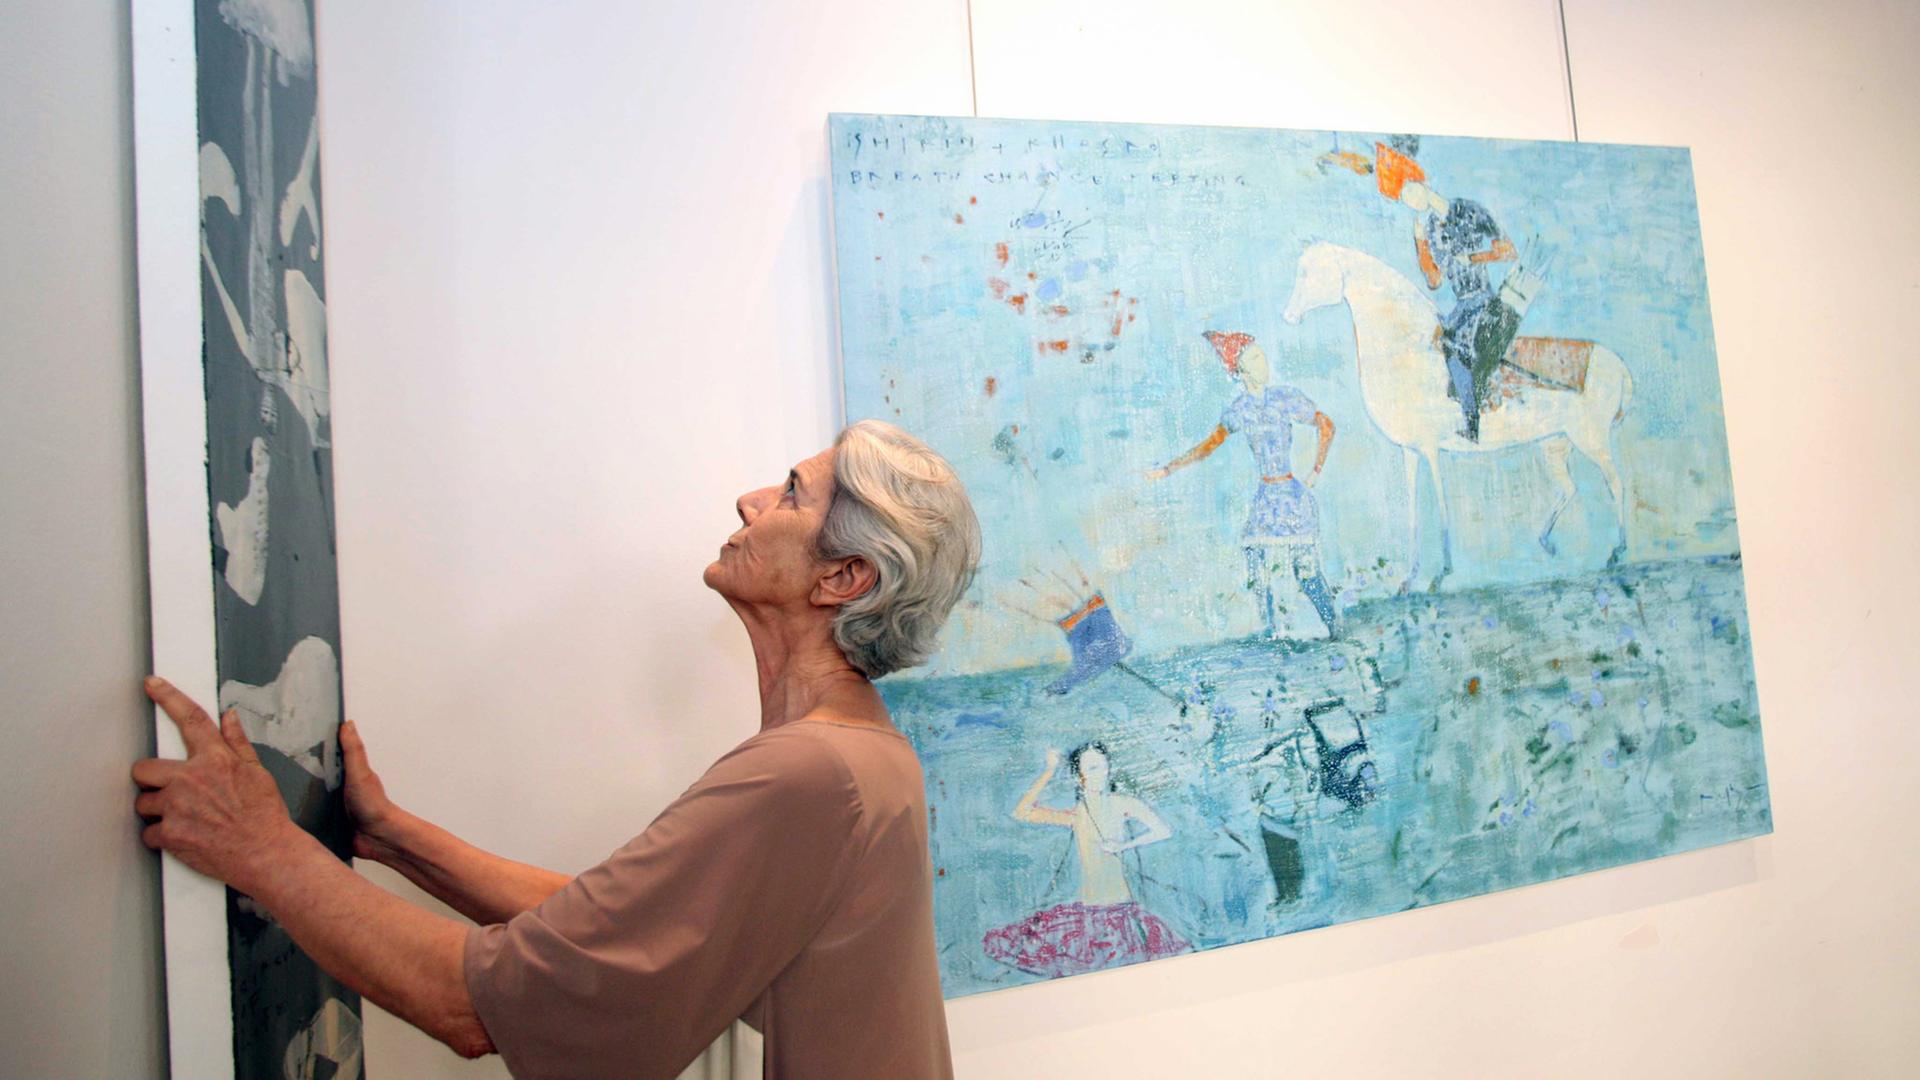 Blick in die Ausstellung von Reza Derakshani in der Dar al-Funoon Art Gallery in Kuwait City im Juni 2012 – Kuratorin Lucia Topalian hängt die Bilder; aktuell ist der Künstler in Chemnitz zu sehen.